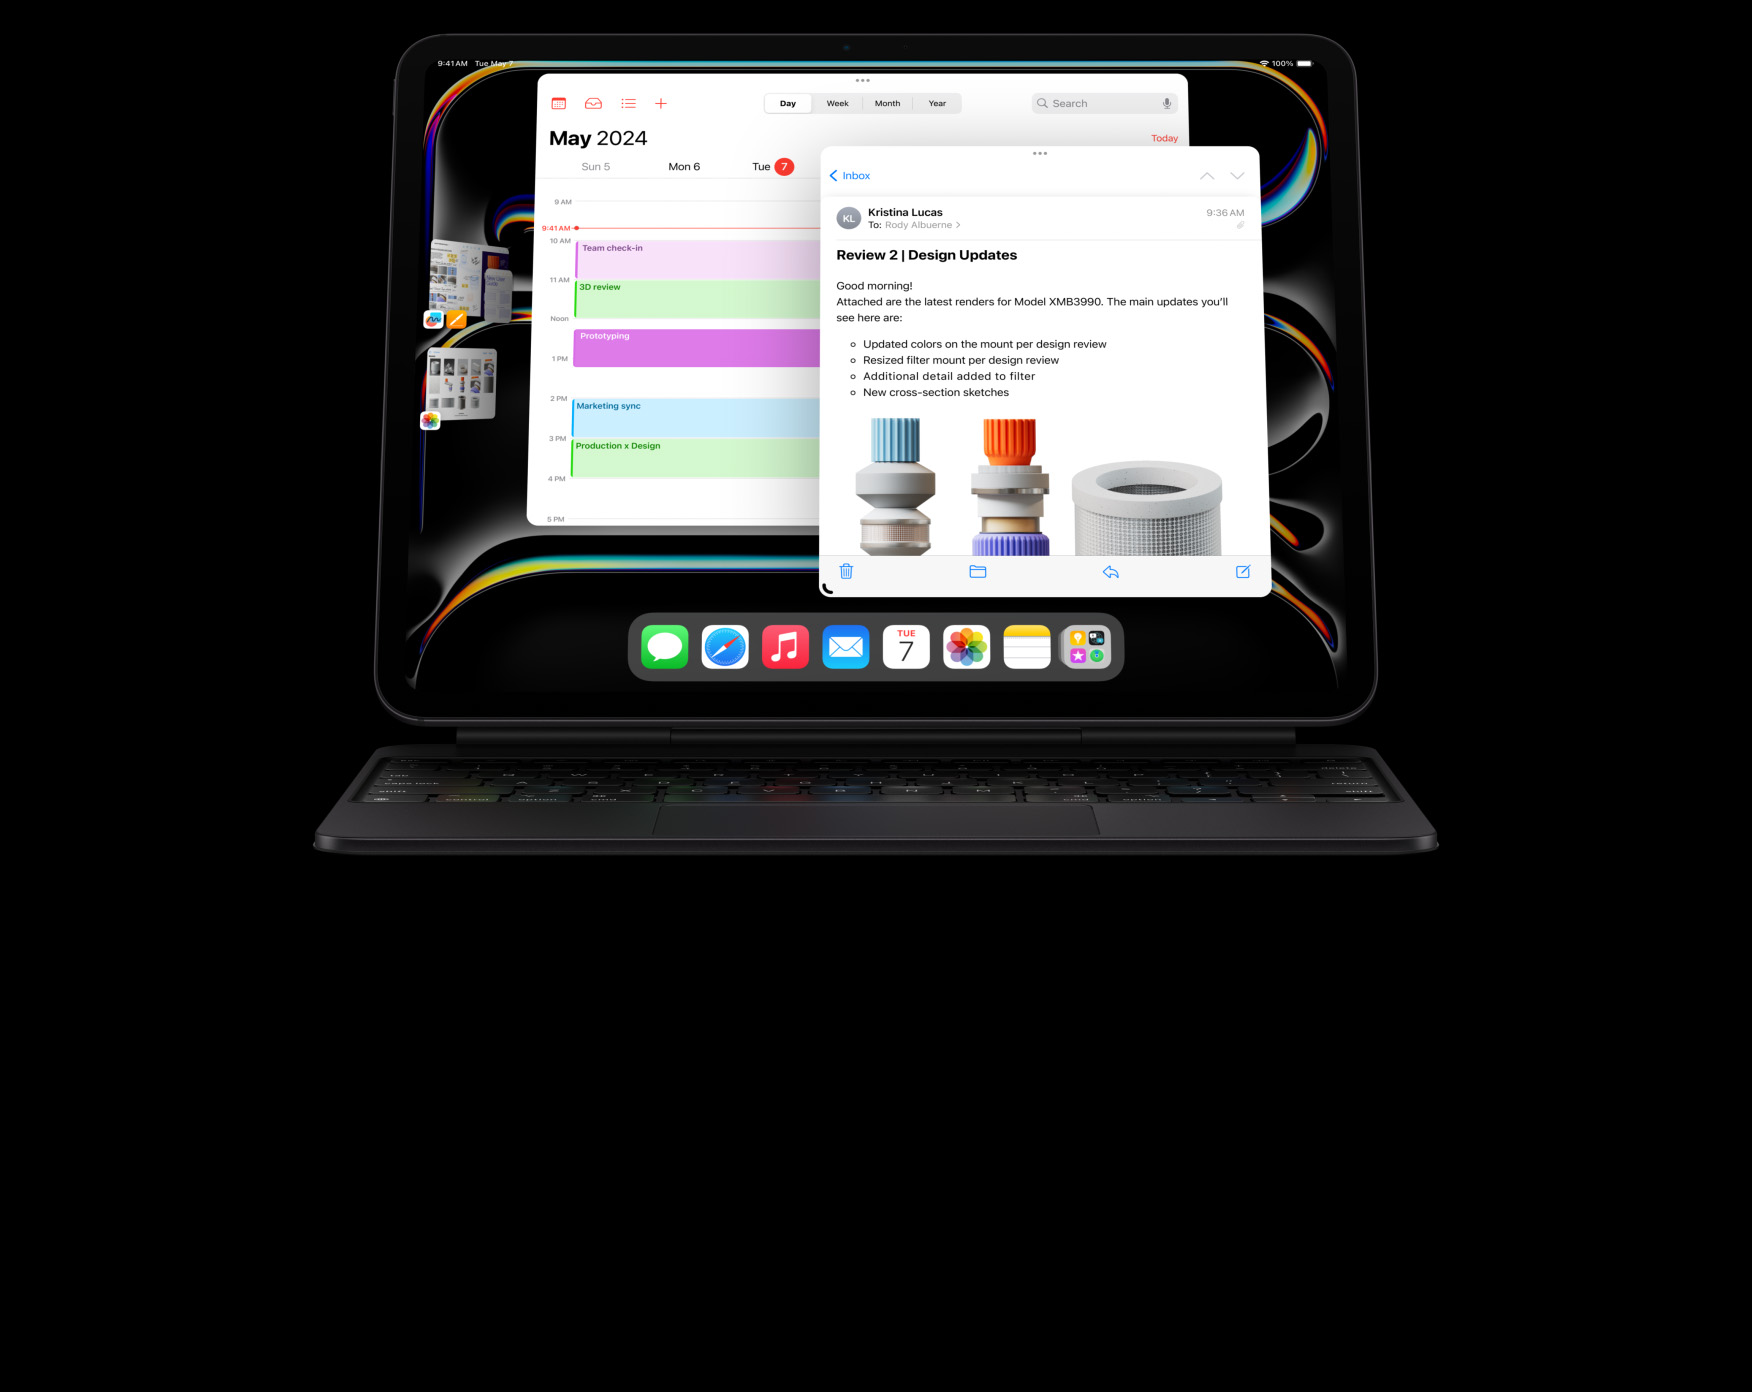 橫向放置的 iPad Pro 貼合在精妙鍵盤，使用者開啟了多個 app，同時進行多項不同工作。